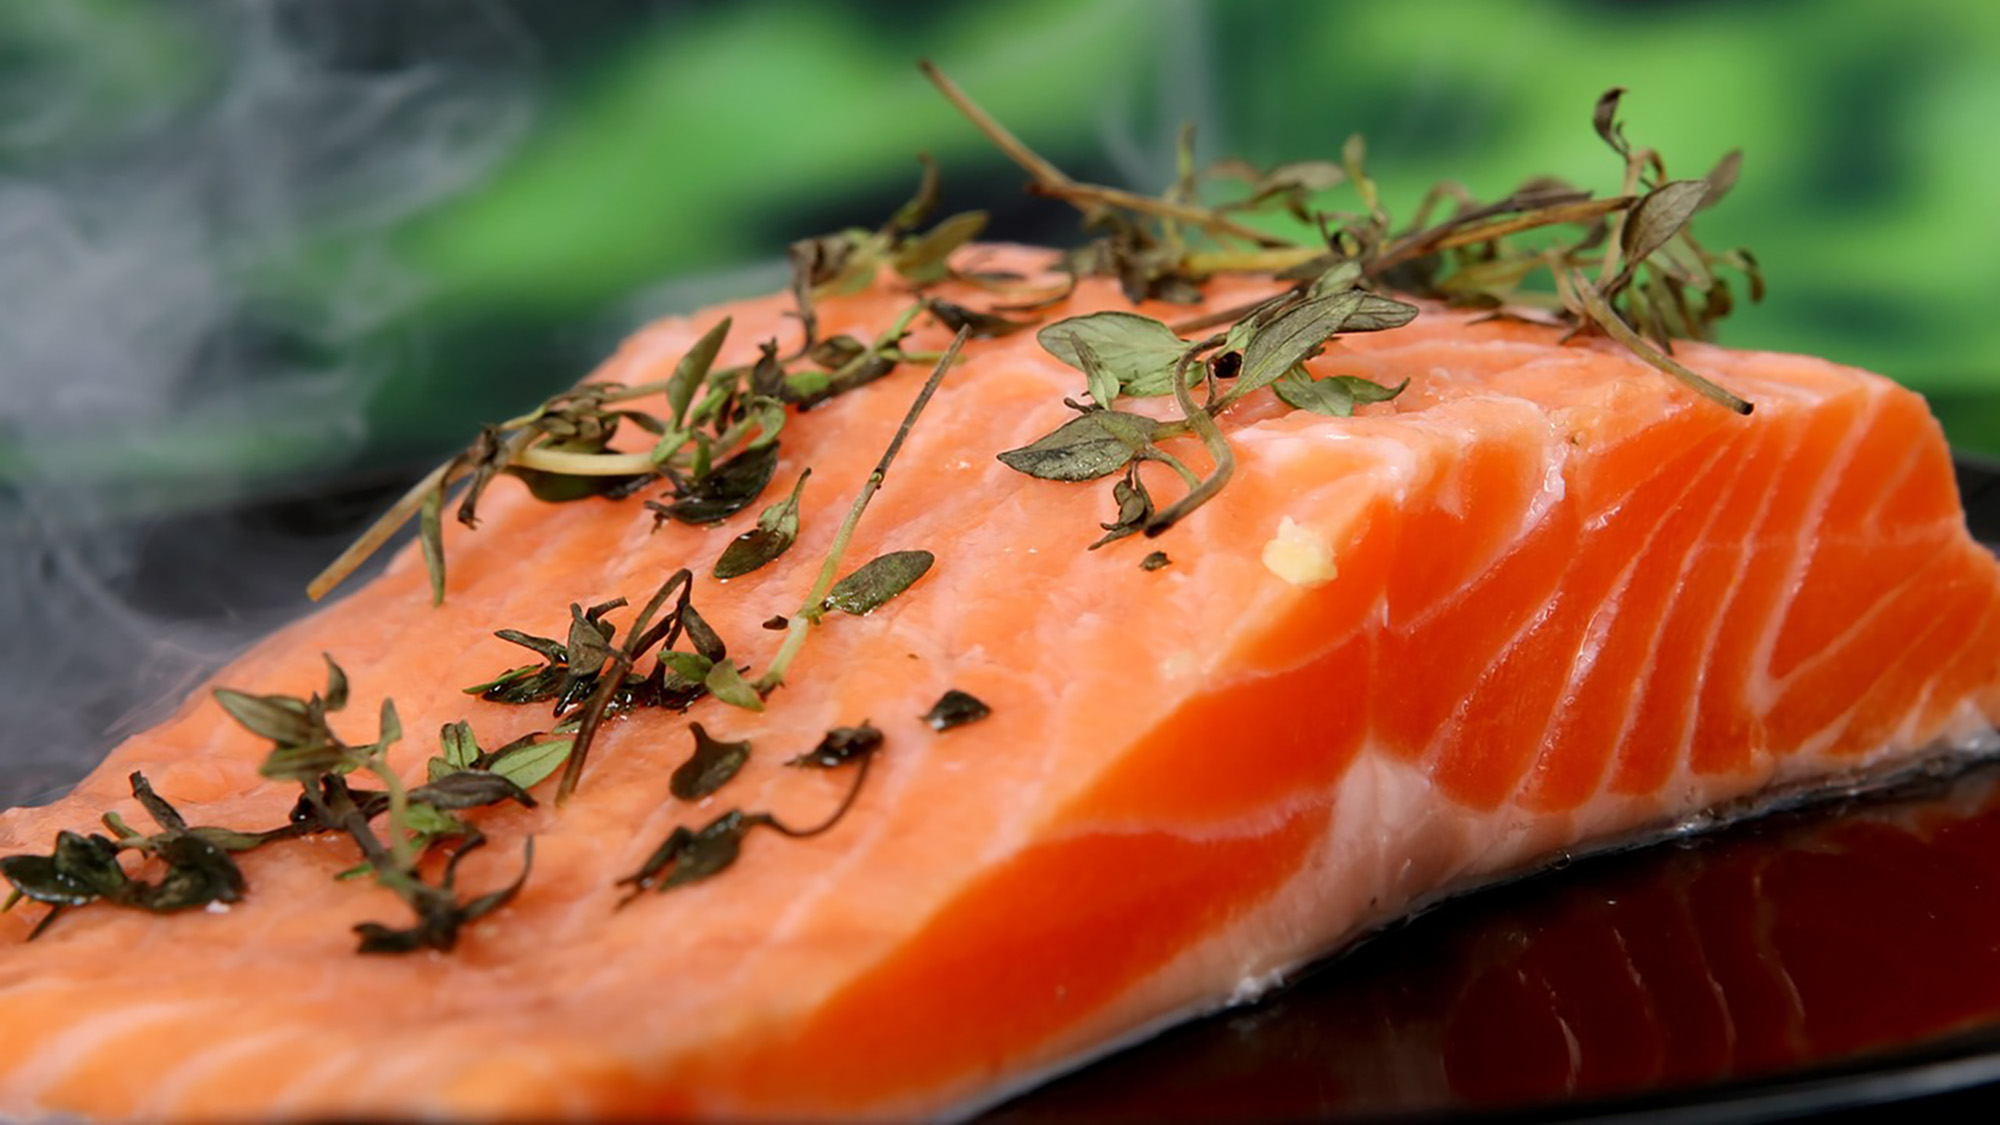 El pescado es una fuente importante de nutrientes. Contiene ácidos grasos poliinsaturados de cadena larga omega-3, importantes para el desarrollo del feto. | Imagen de Shutterbug75 en Pixabay.